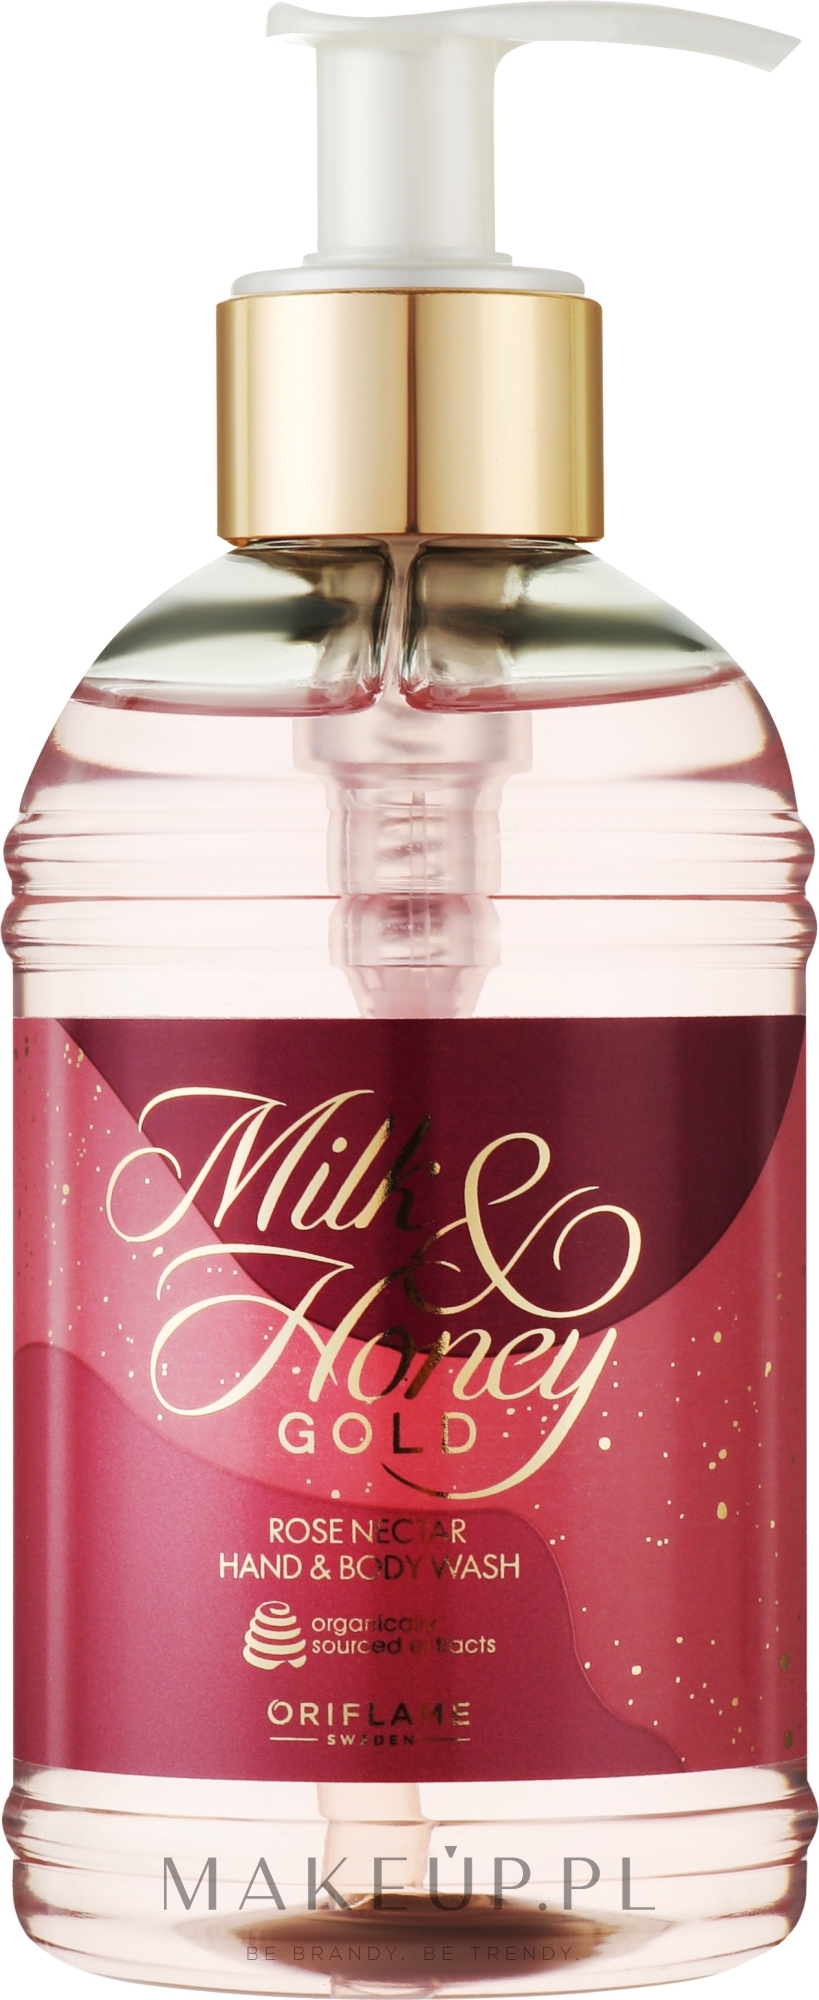 Mydło do rąk - Oriflame Milk & Honey Gold Rose Nectar Hand & Body Wash — Zdjęcie 300 ml